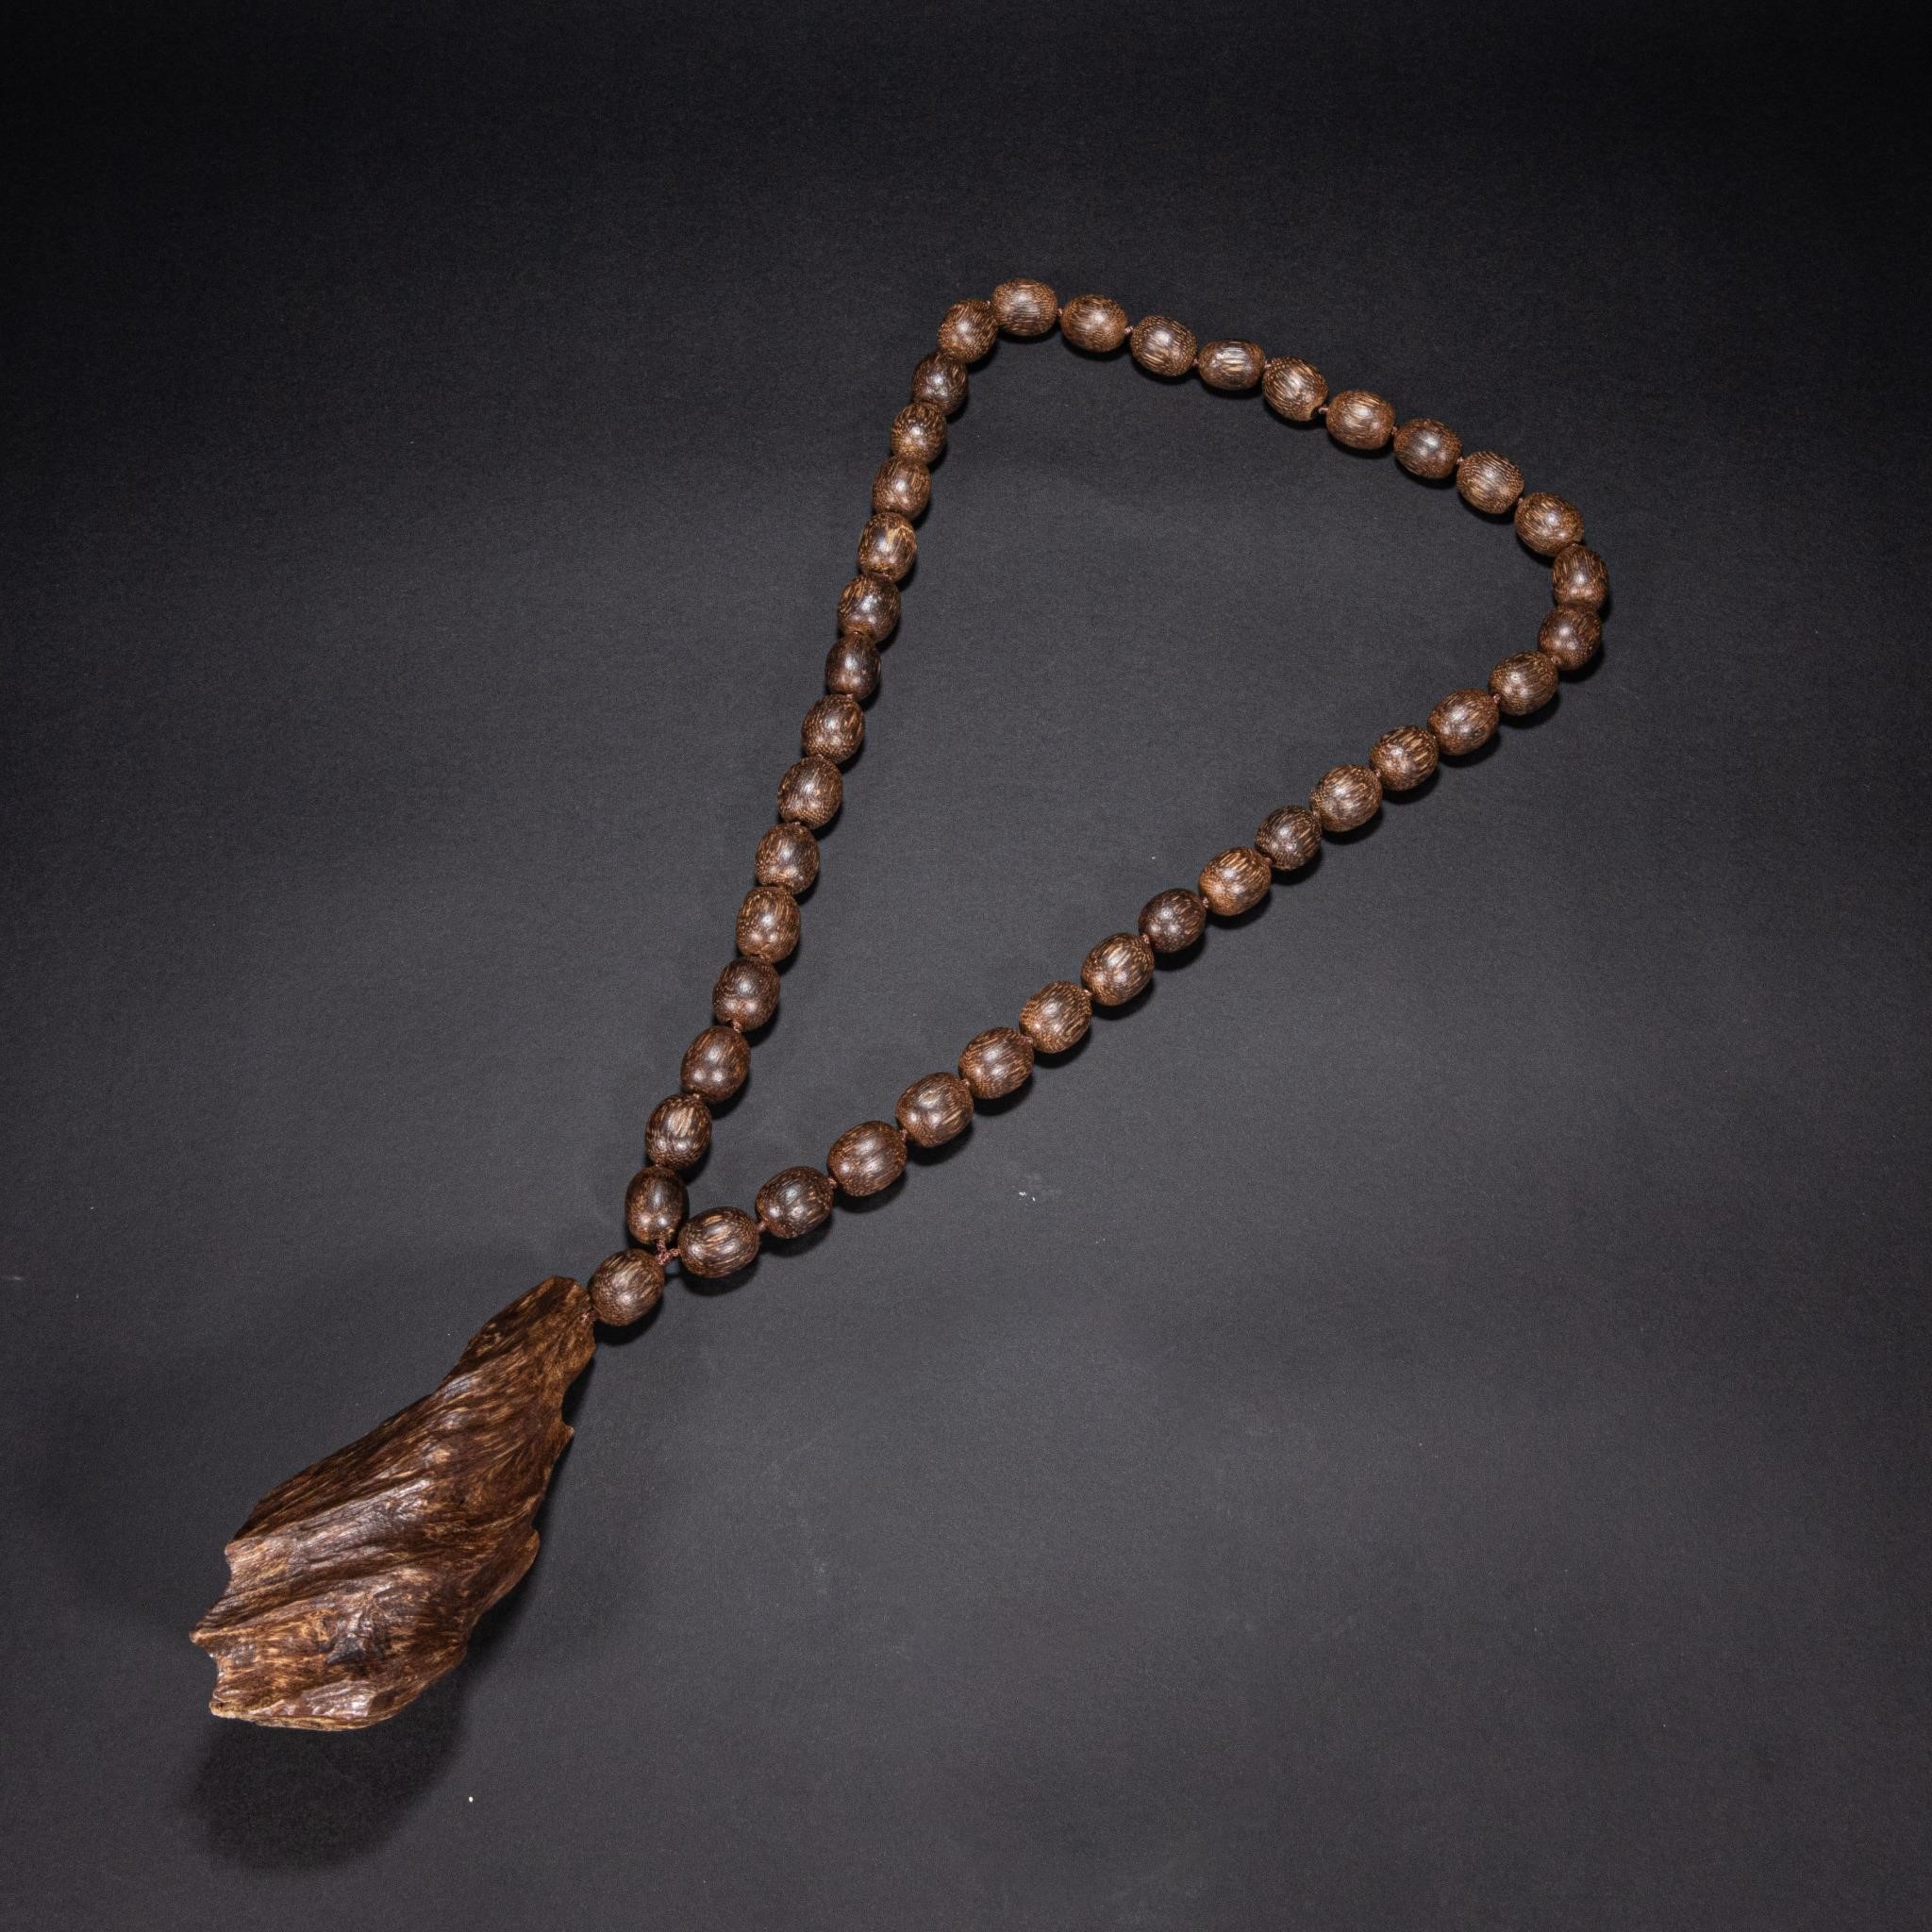 Agarwood necklace